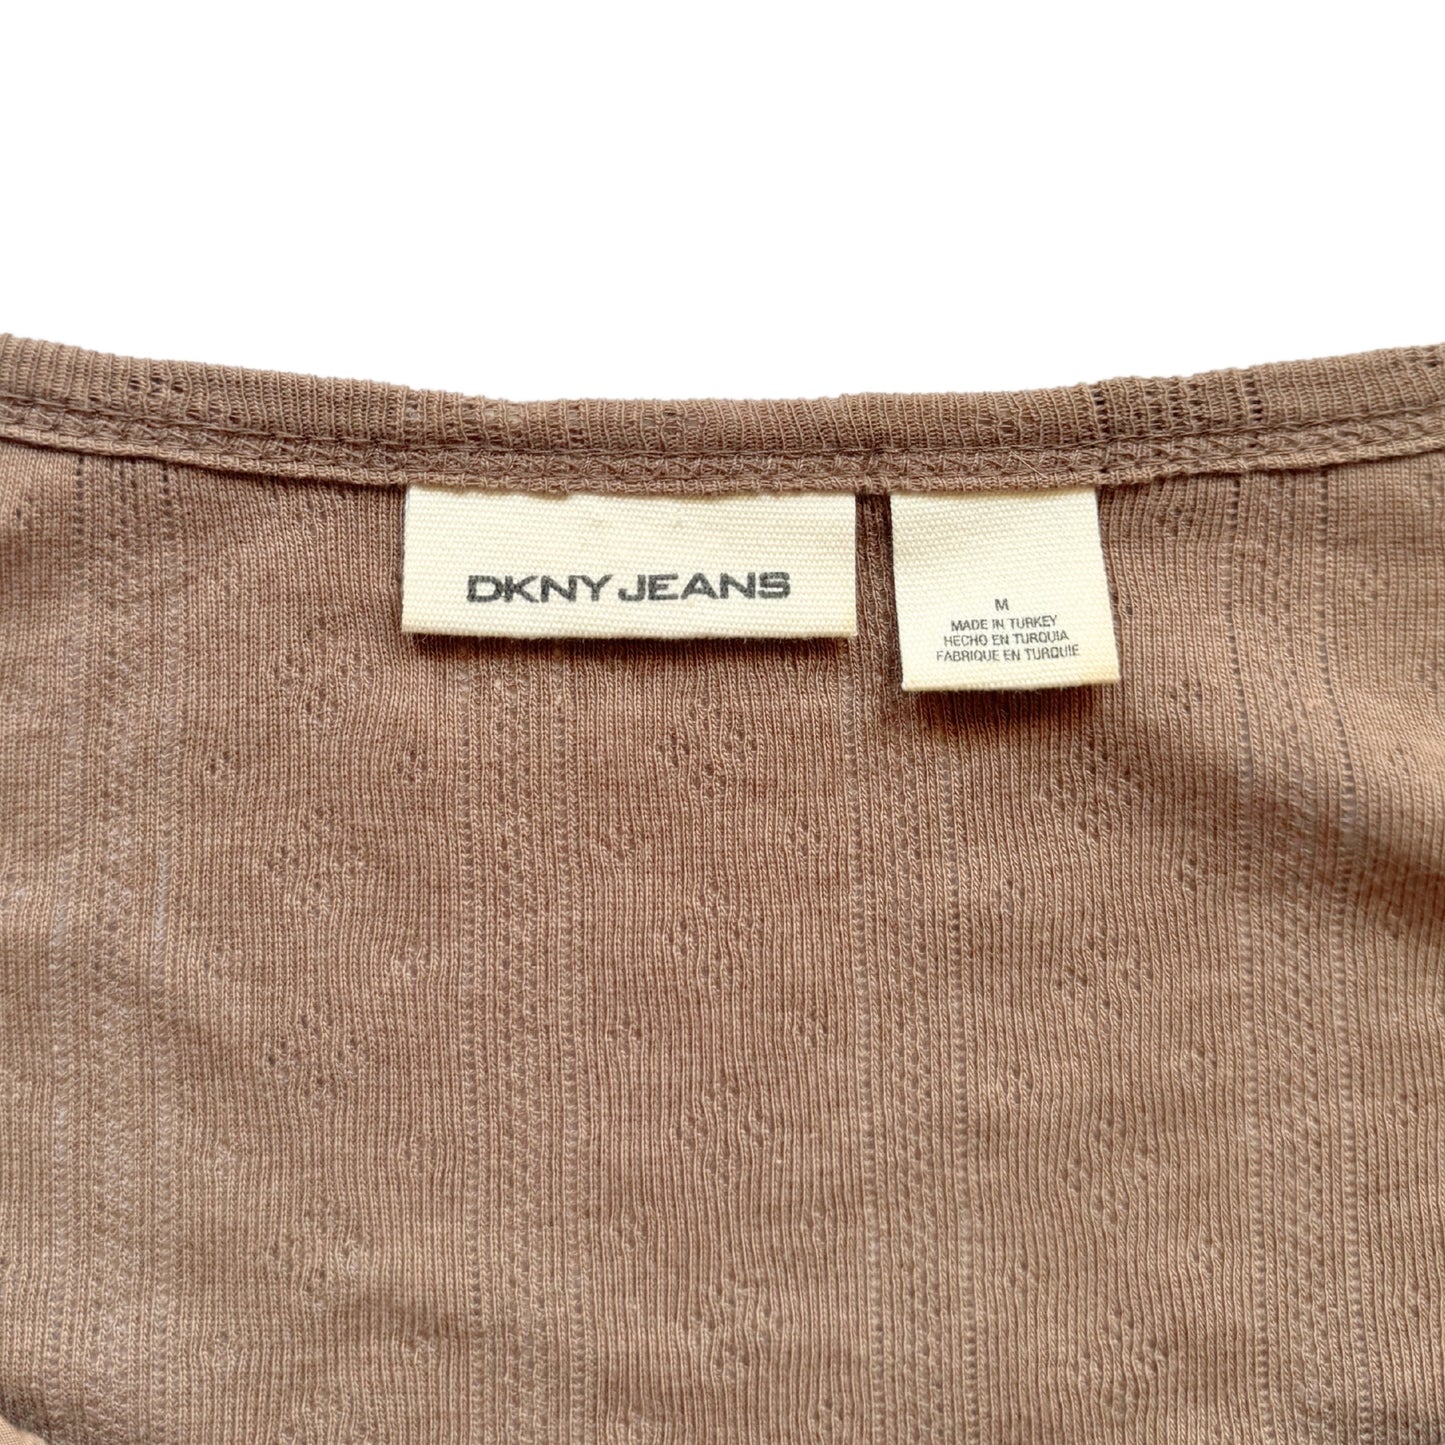 Vintage 2000s Y2k DKNY Jeans Brown Milkmaid 3/4 Sleeve Top